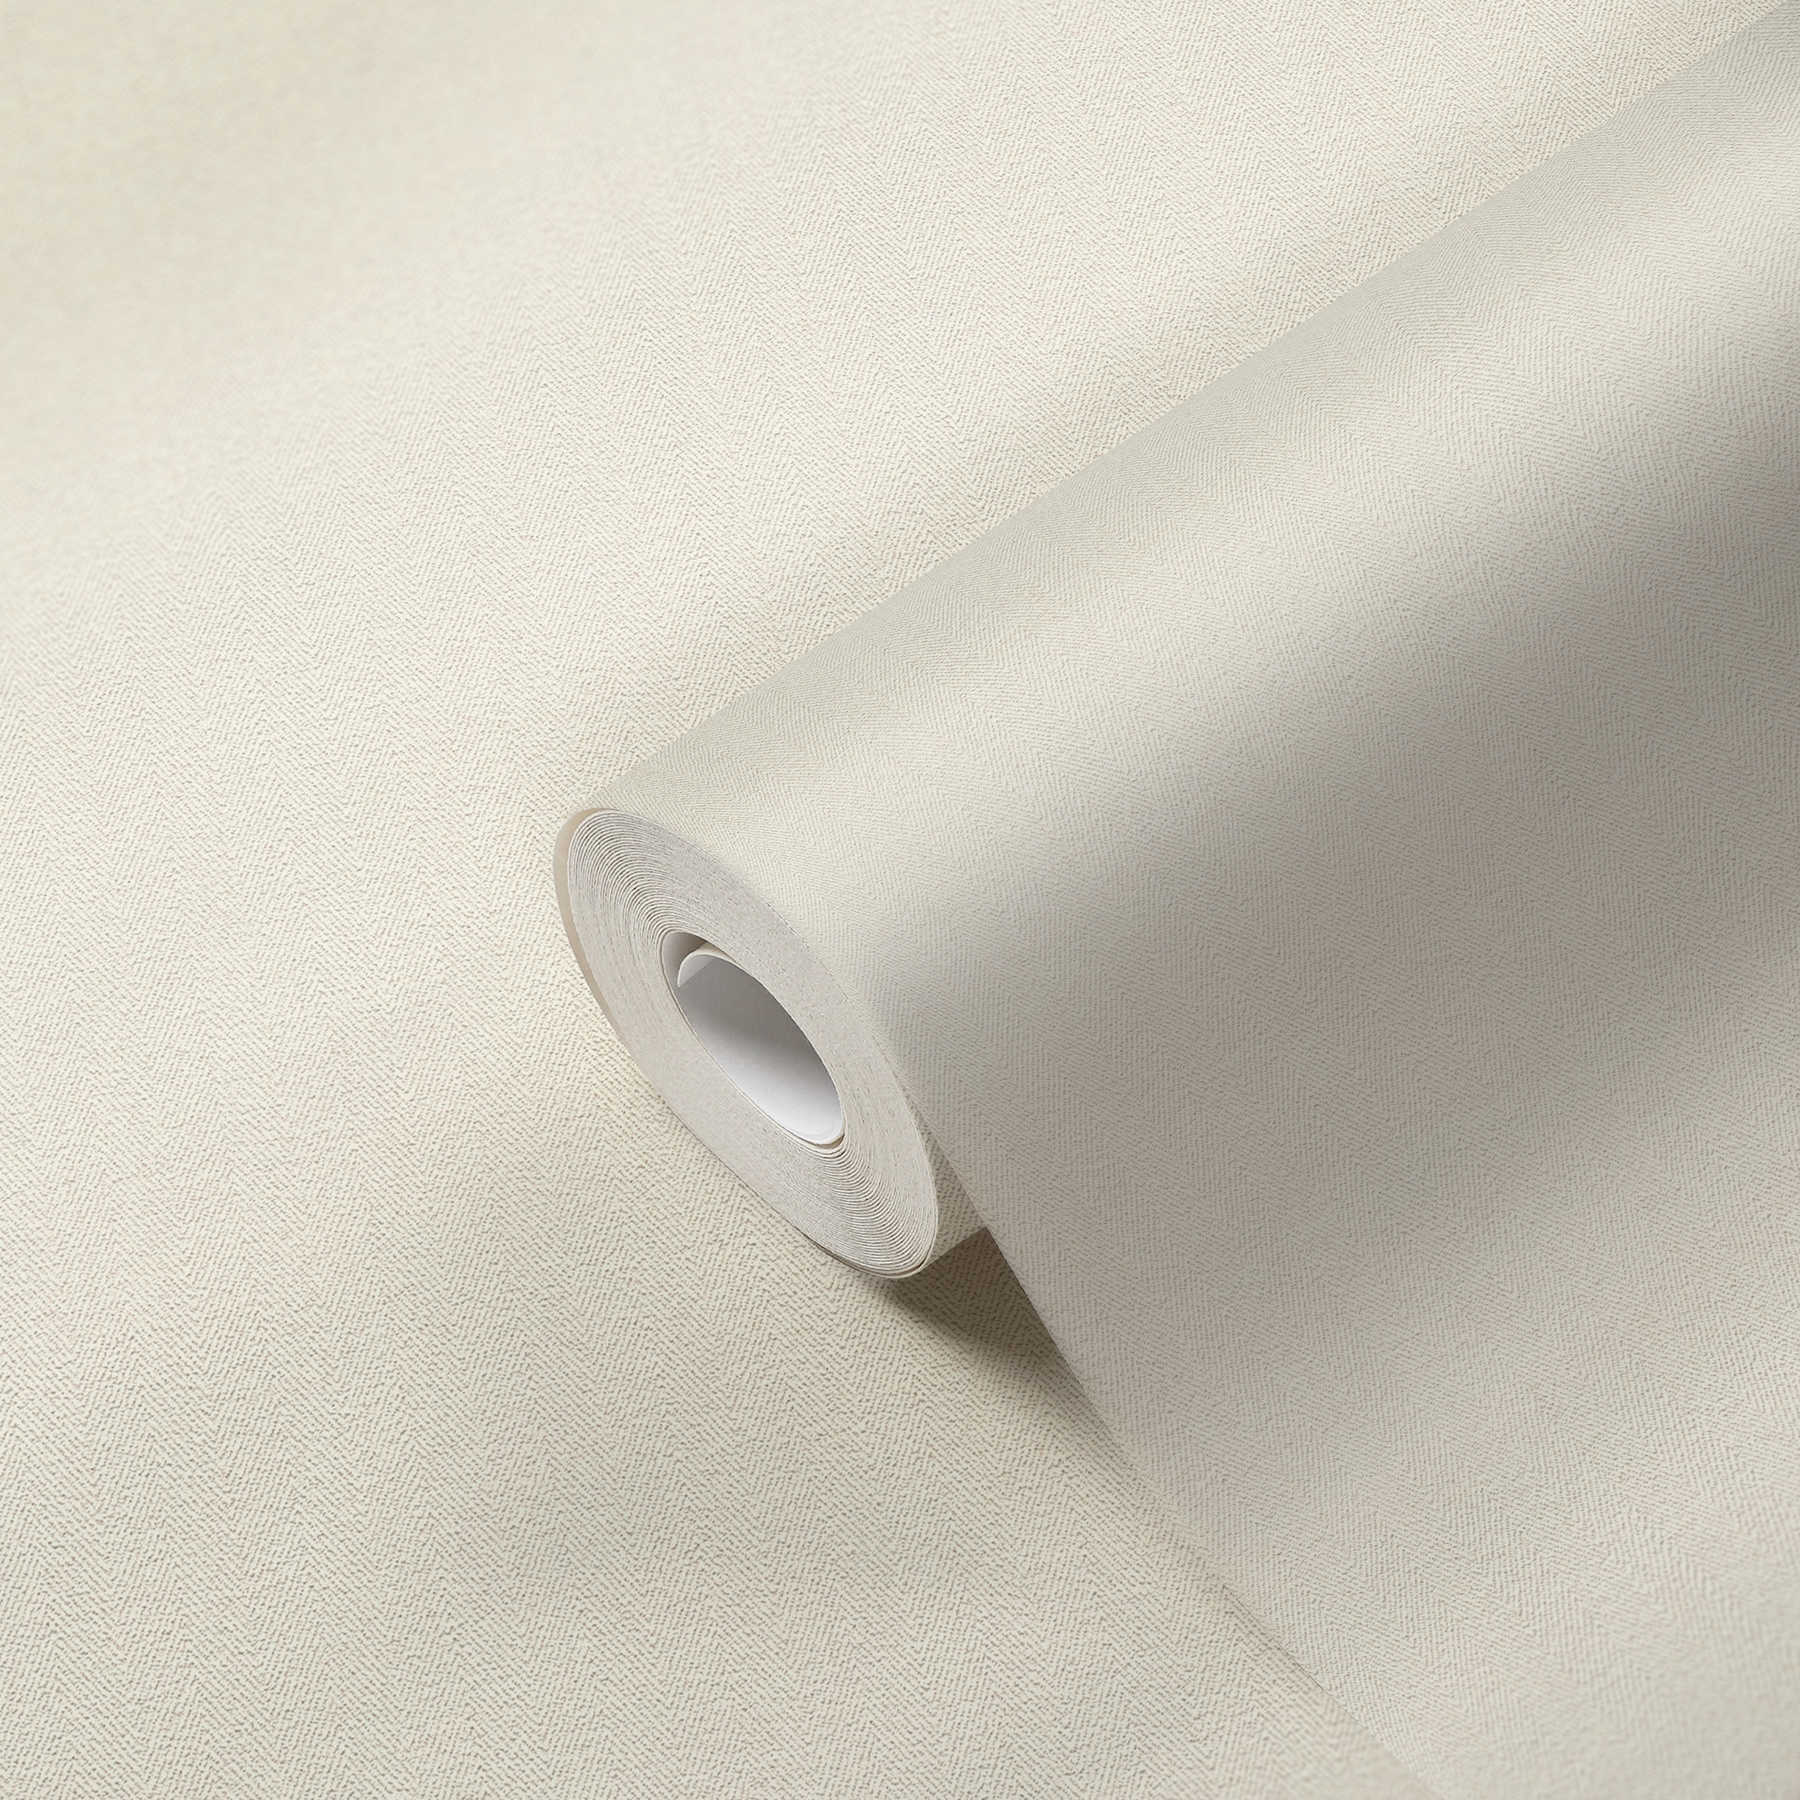             Papel pintado no tejido con aspecto de lino y diseño en espiga - crema
        